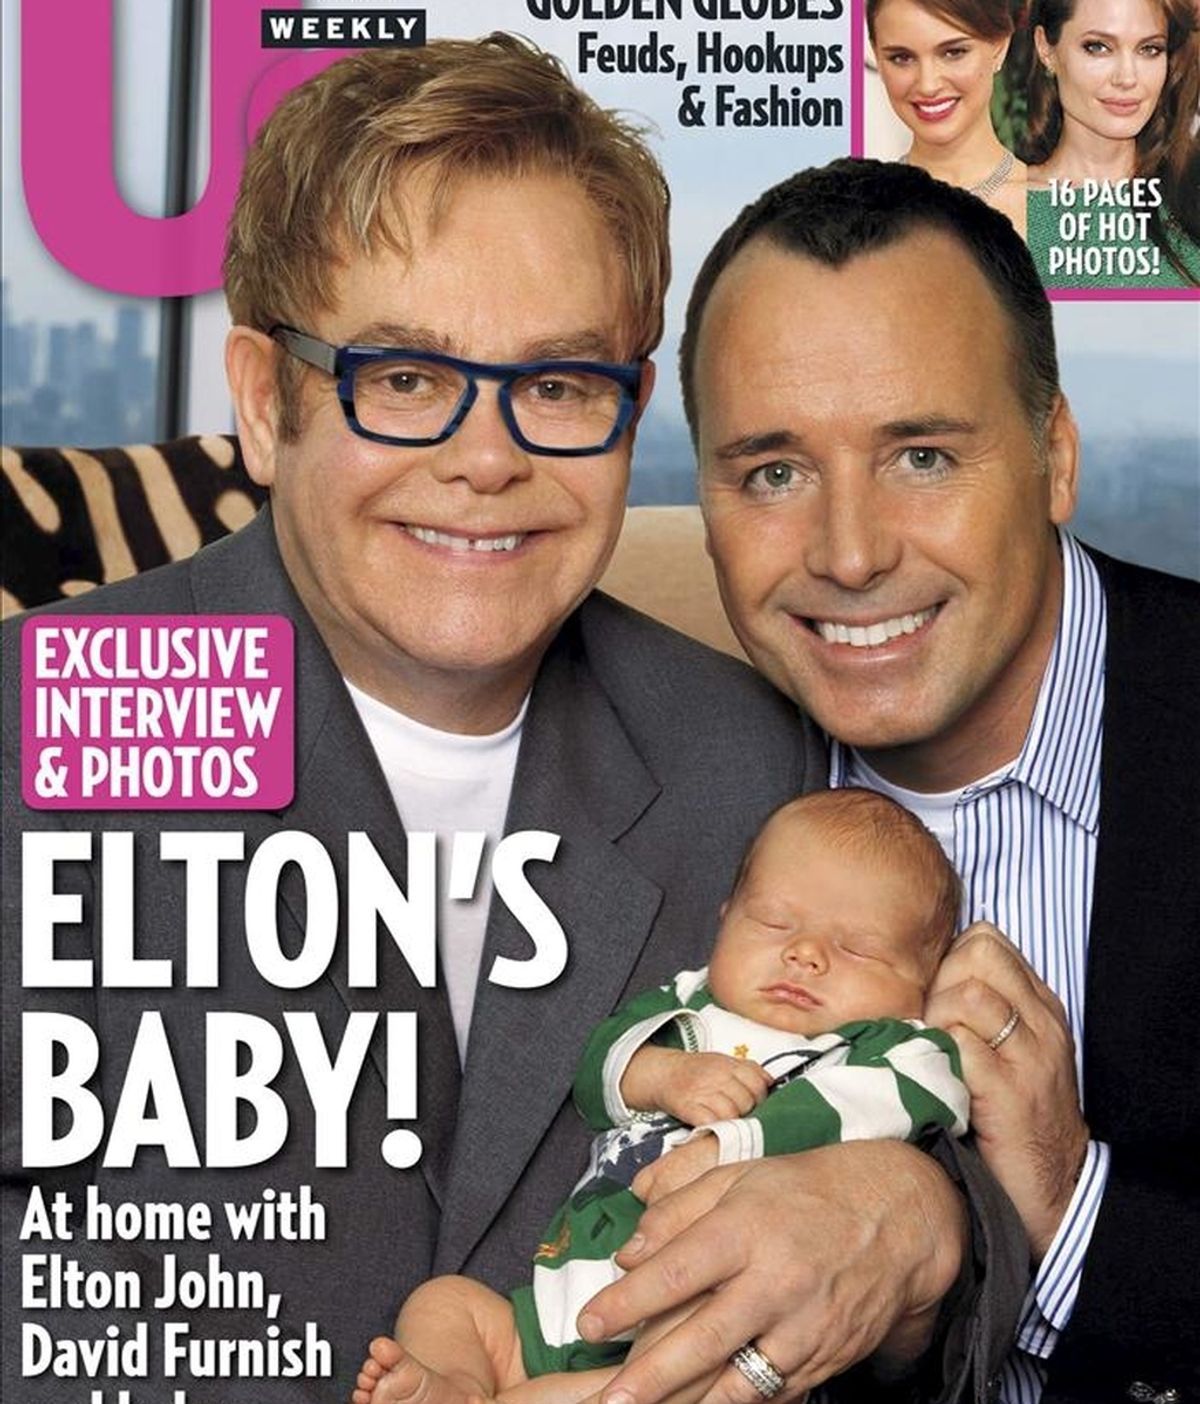 Imagen cedida por US Weekly el pasado jueves 27 de enero, que muestra la portada de la revista en la que el músico británico Elton John y su pareja David Furnish posan con su hijo recientemente adoptado Zachary. EFE/Archivo